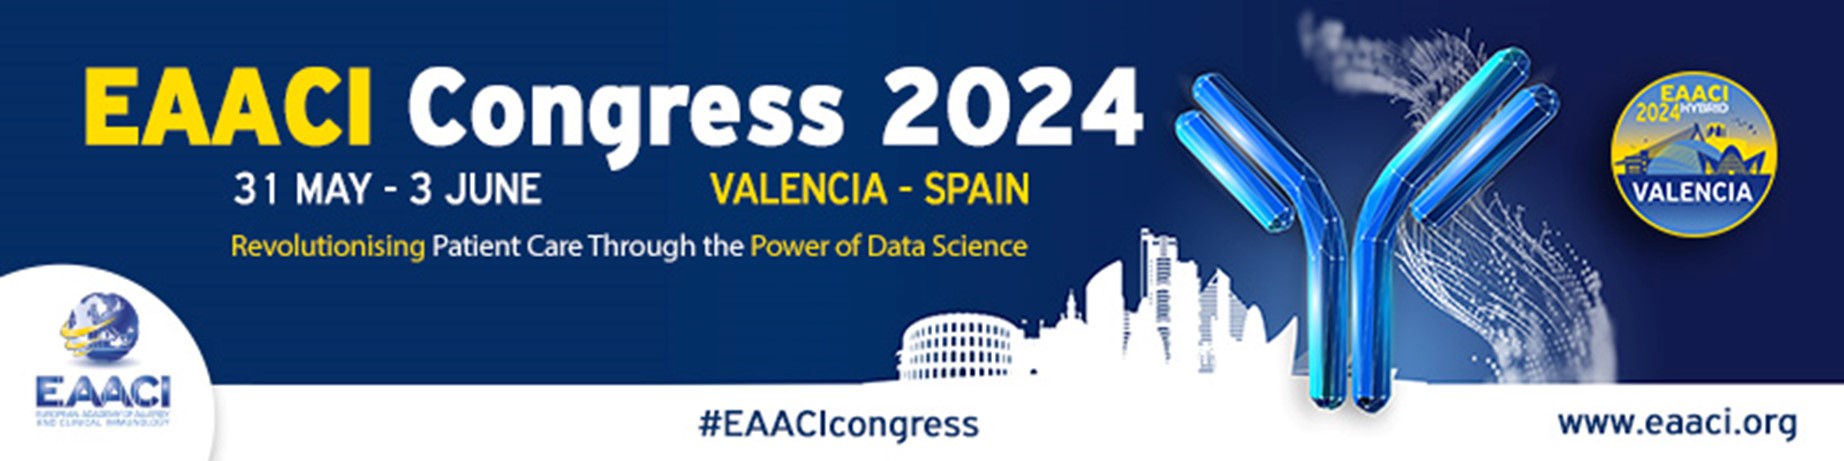 Cubriendo los últimos avances en el campo de la alergia y la inmunología clínica en la conferencia EAACI 2024 en Valencia, España, Business News